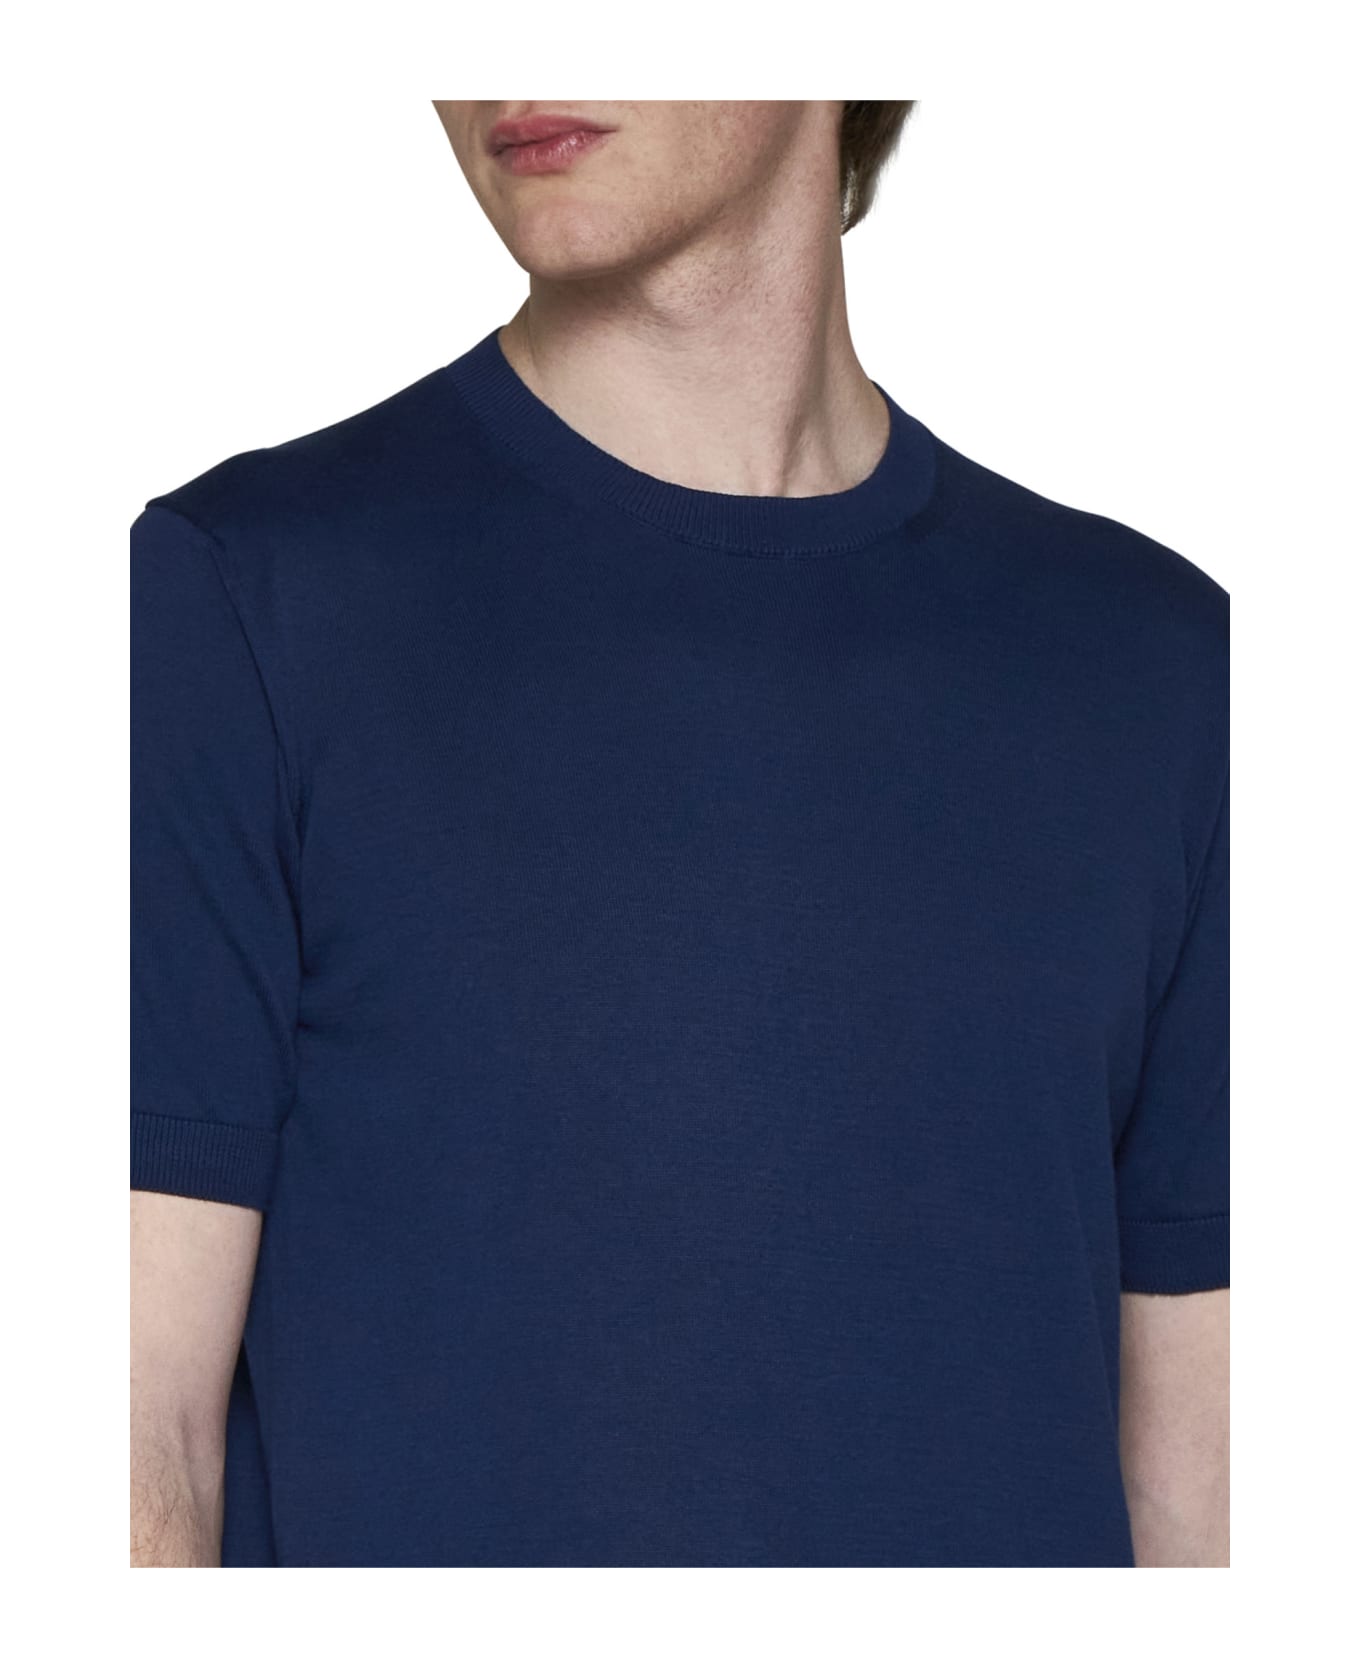 Tagliatore T-shirt - Blue シャツ